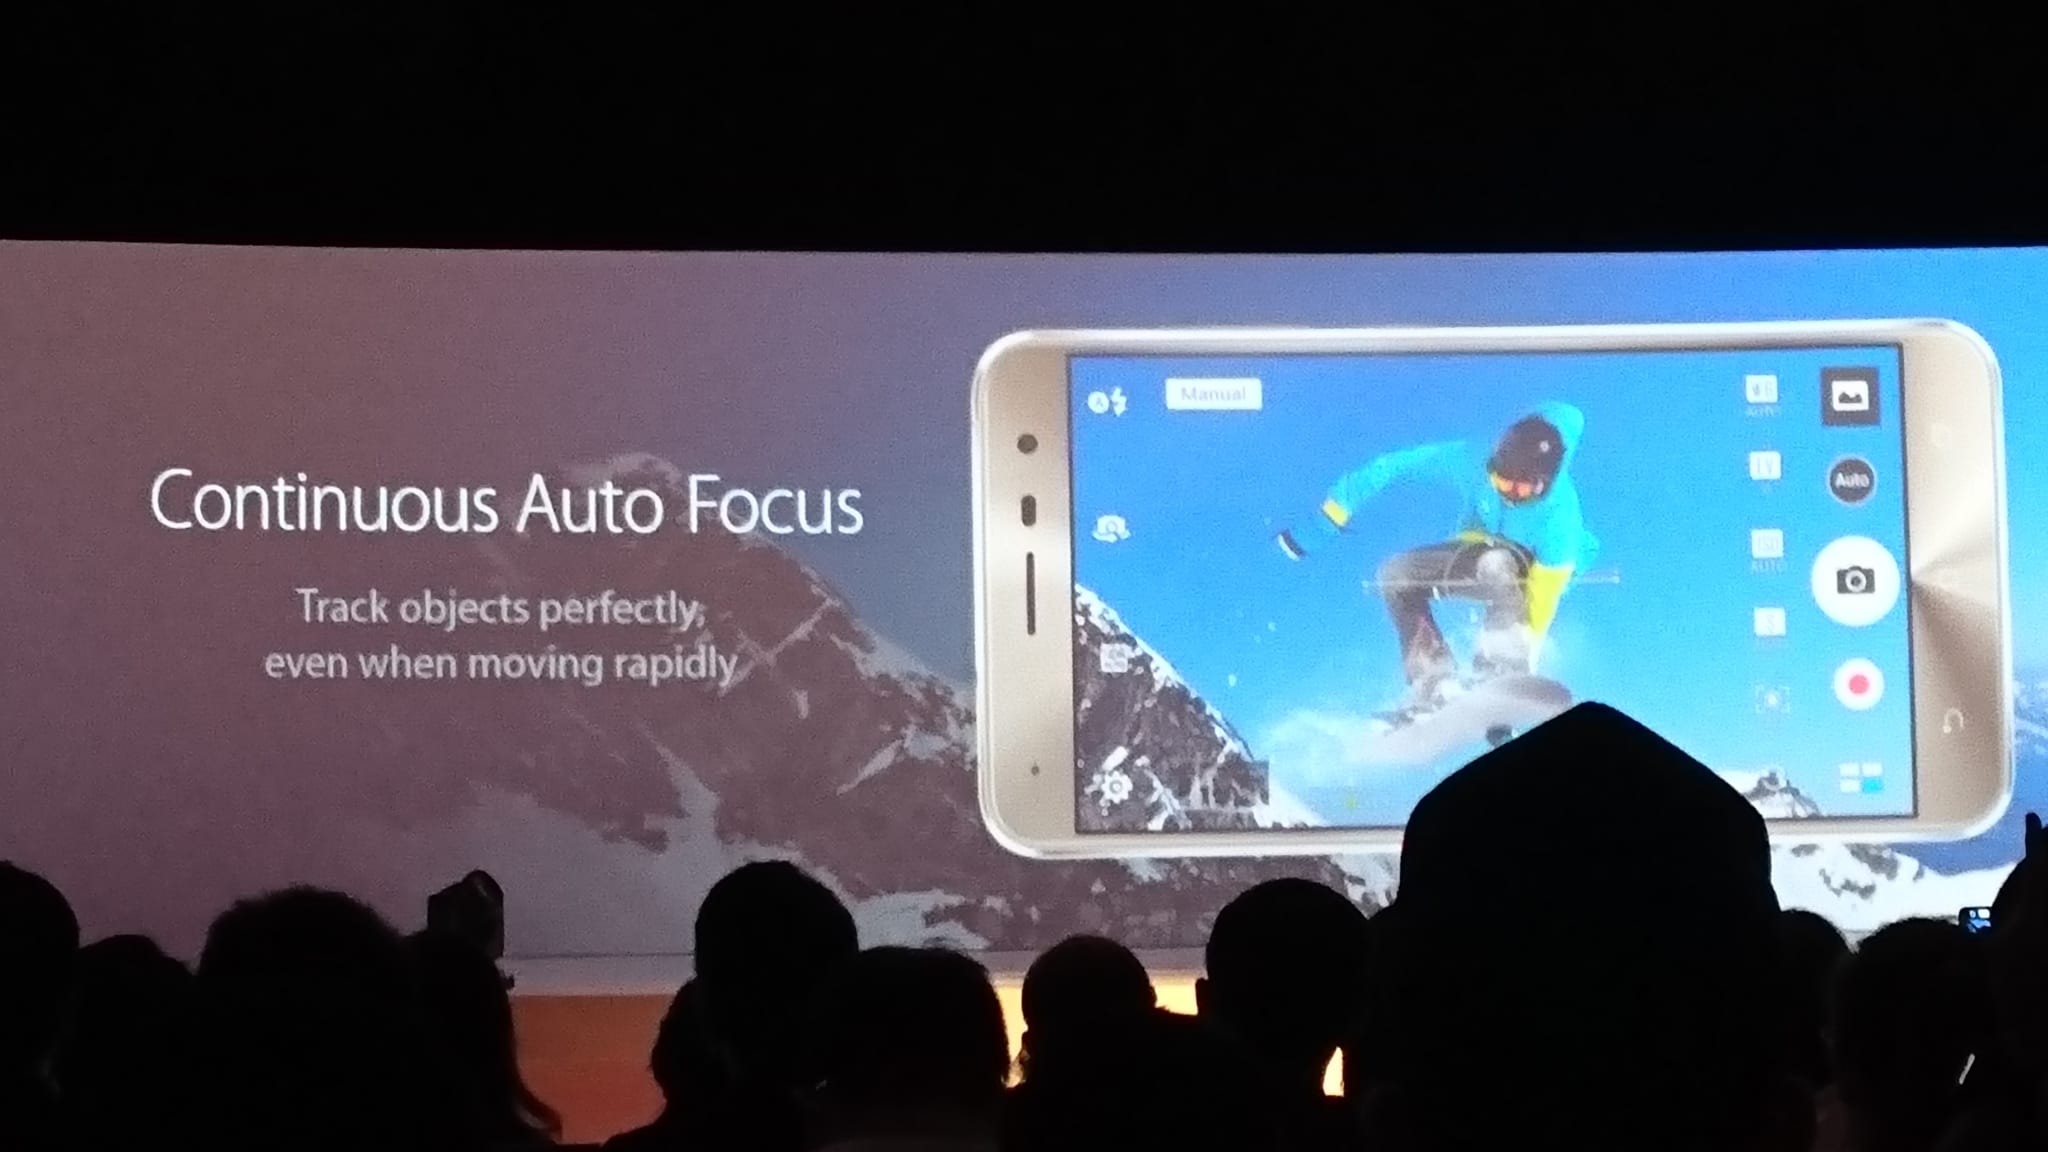 ASUS Zenfone 3 Continous Auto Focus